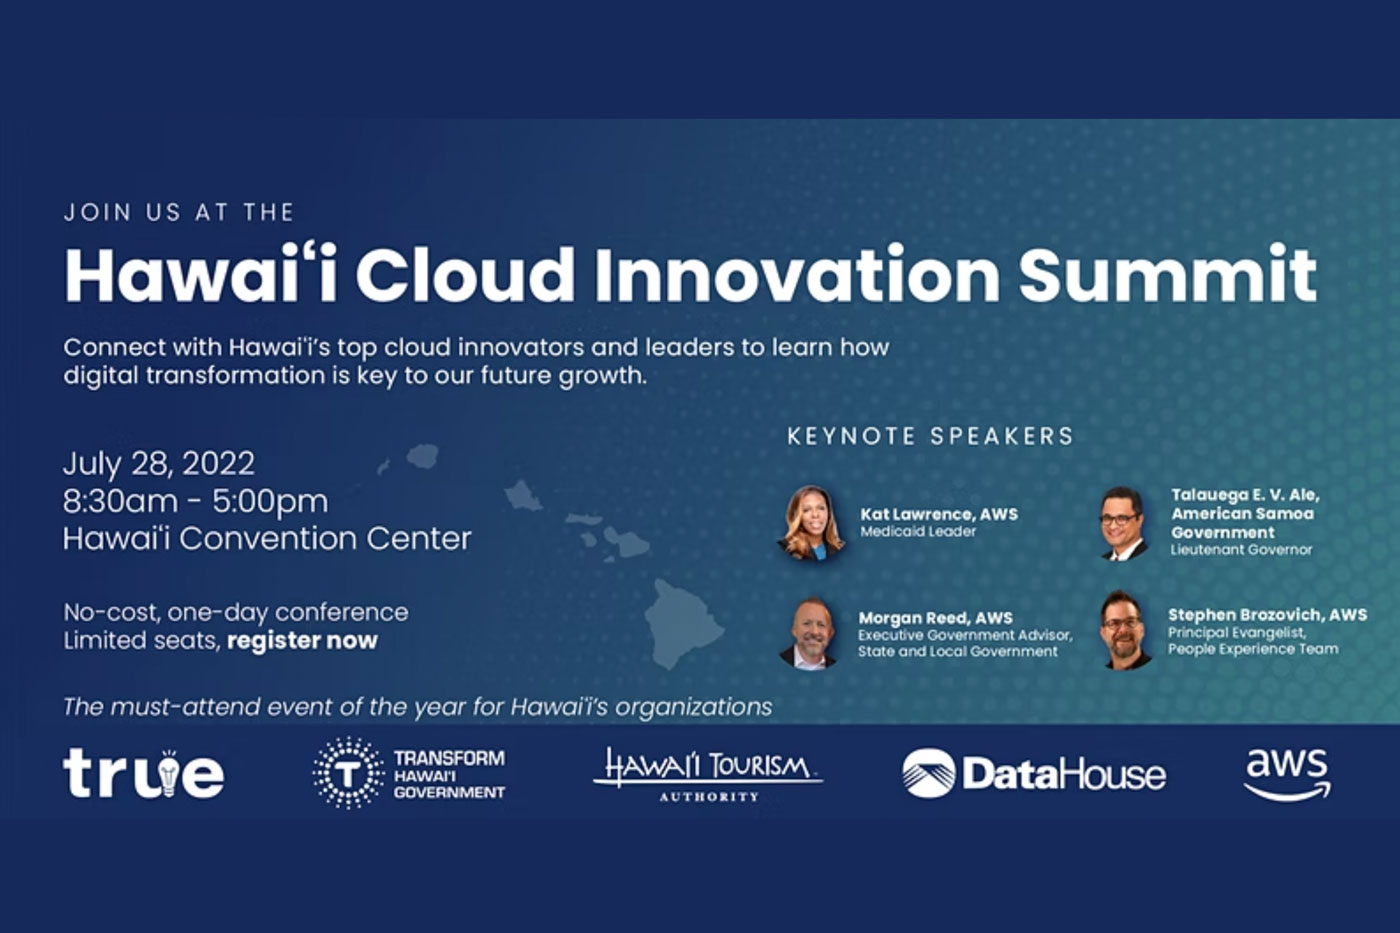 Hawaii Cloud Innovation Summit Flyer